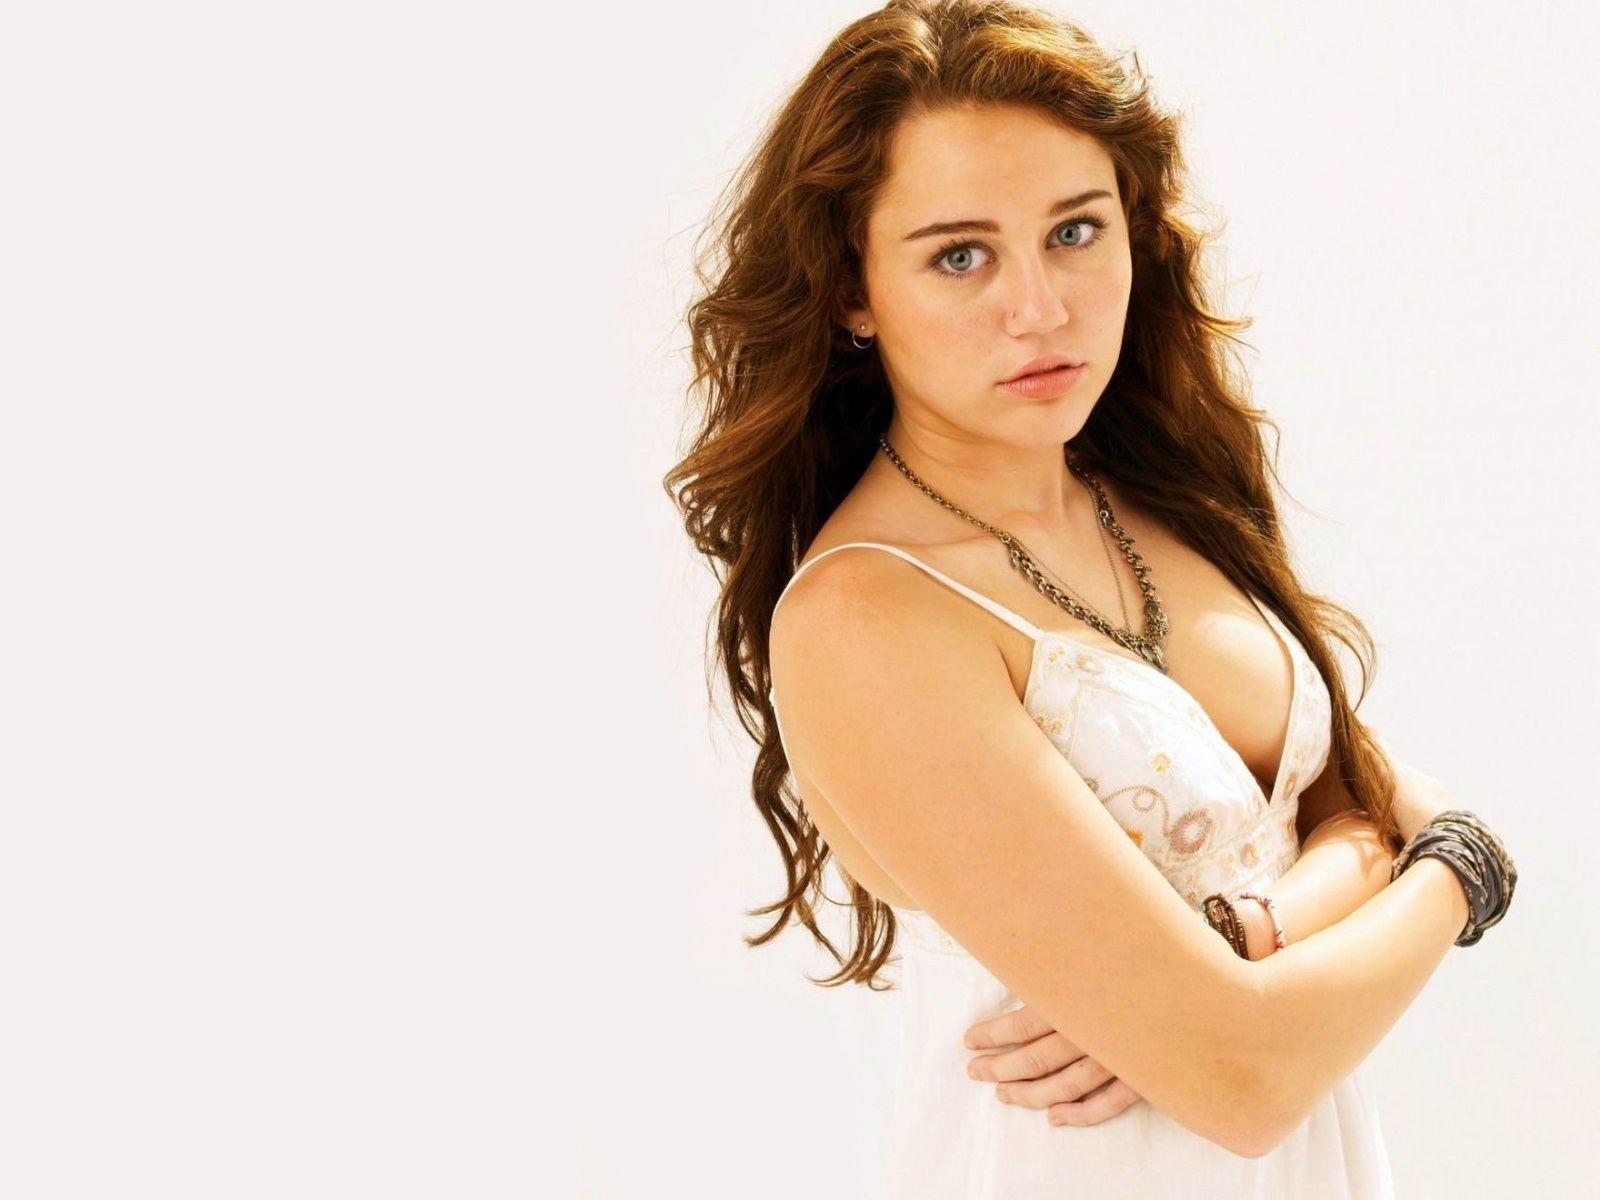 Miley Cyrus HD Desktop Wallpaper. Hot miley cyrus. miley songs